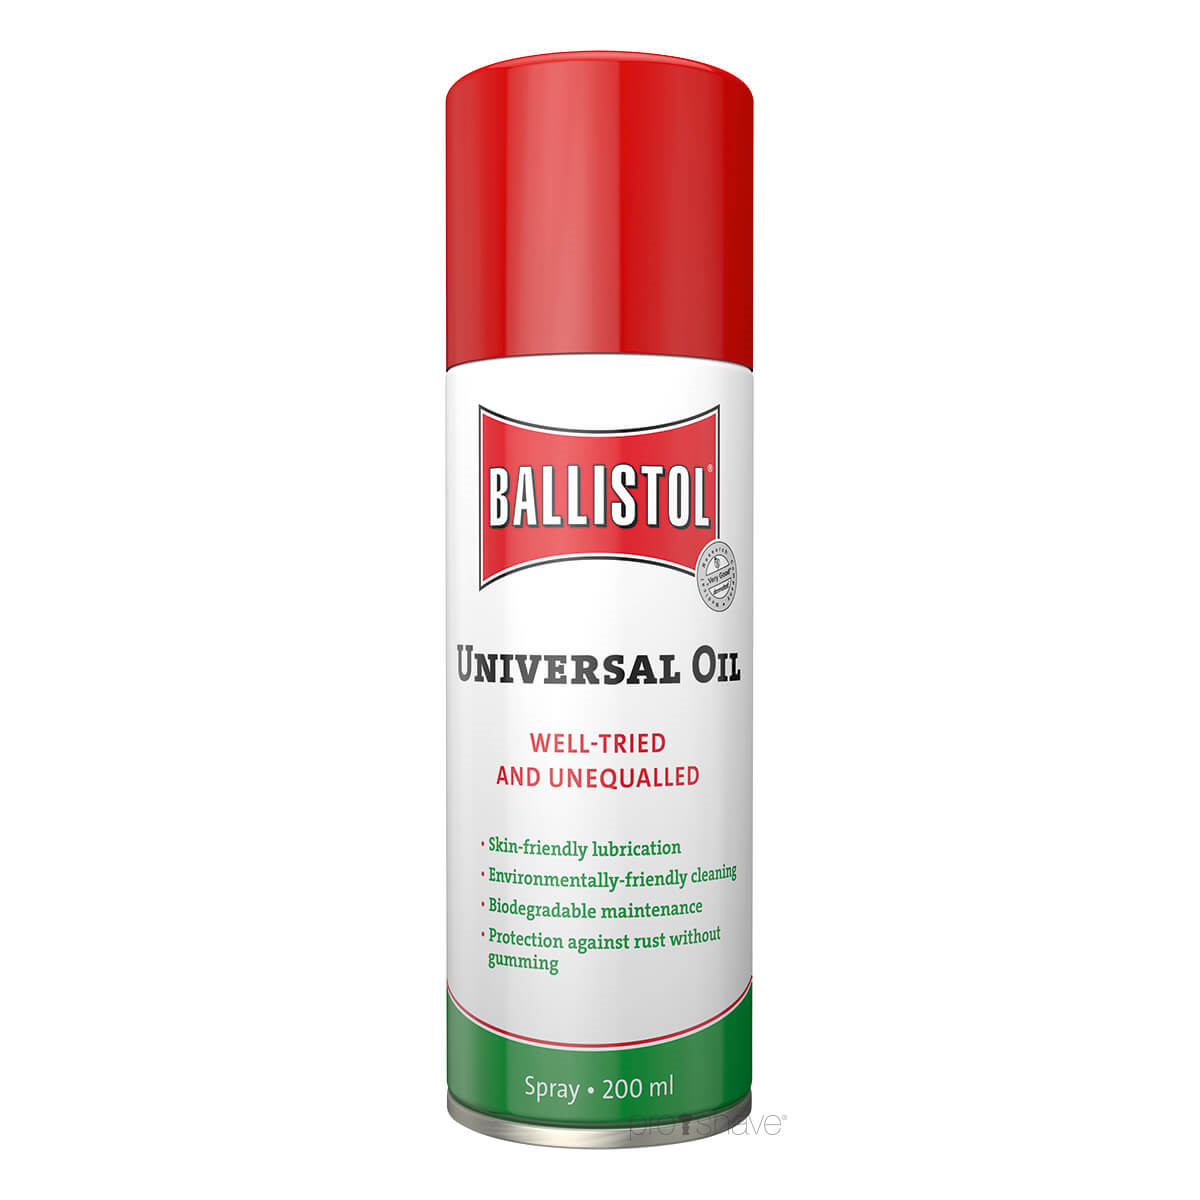 Ballistol Universalolie Spray, 200 ml.